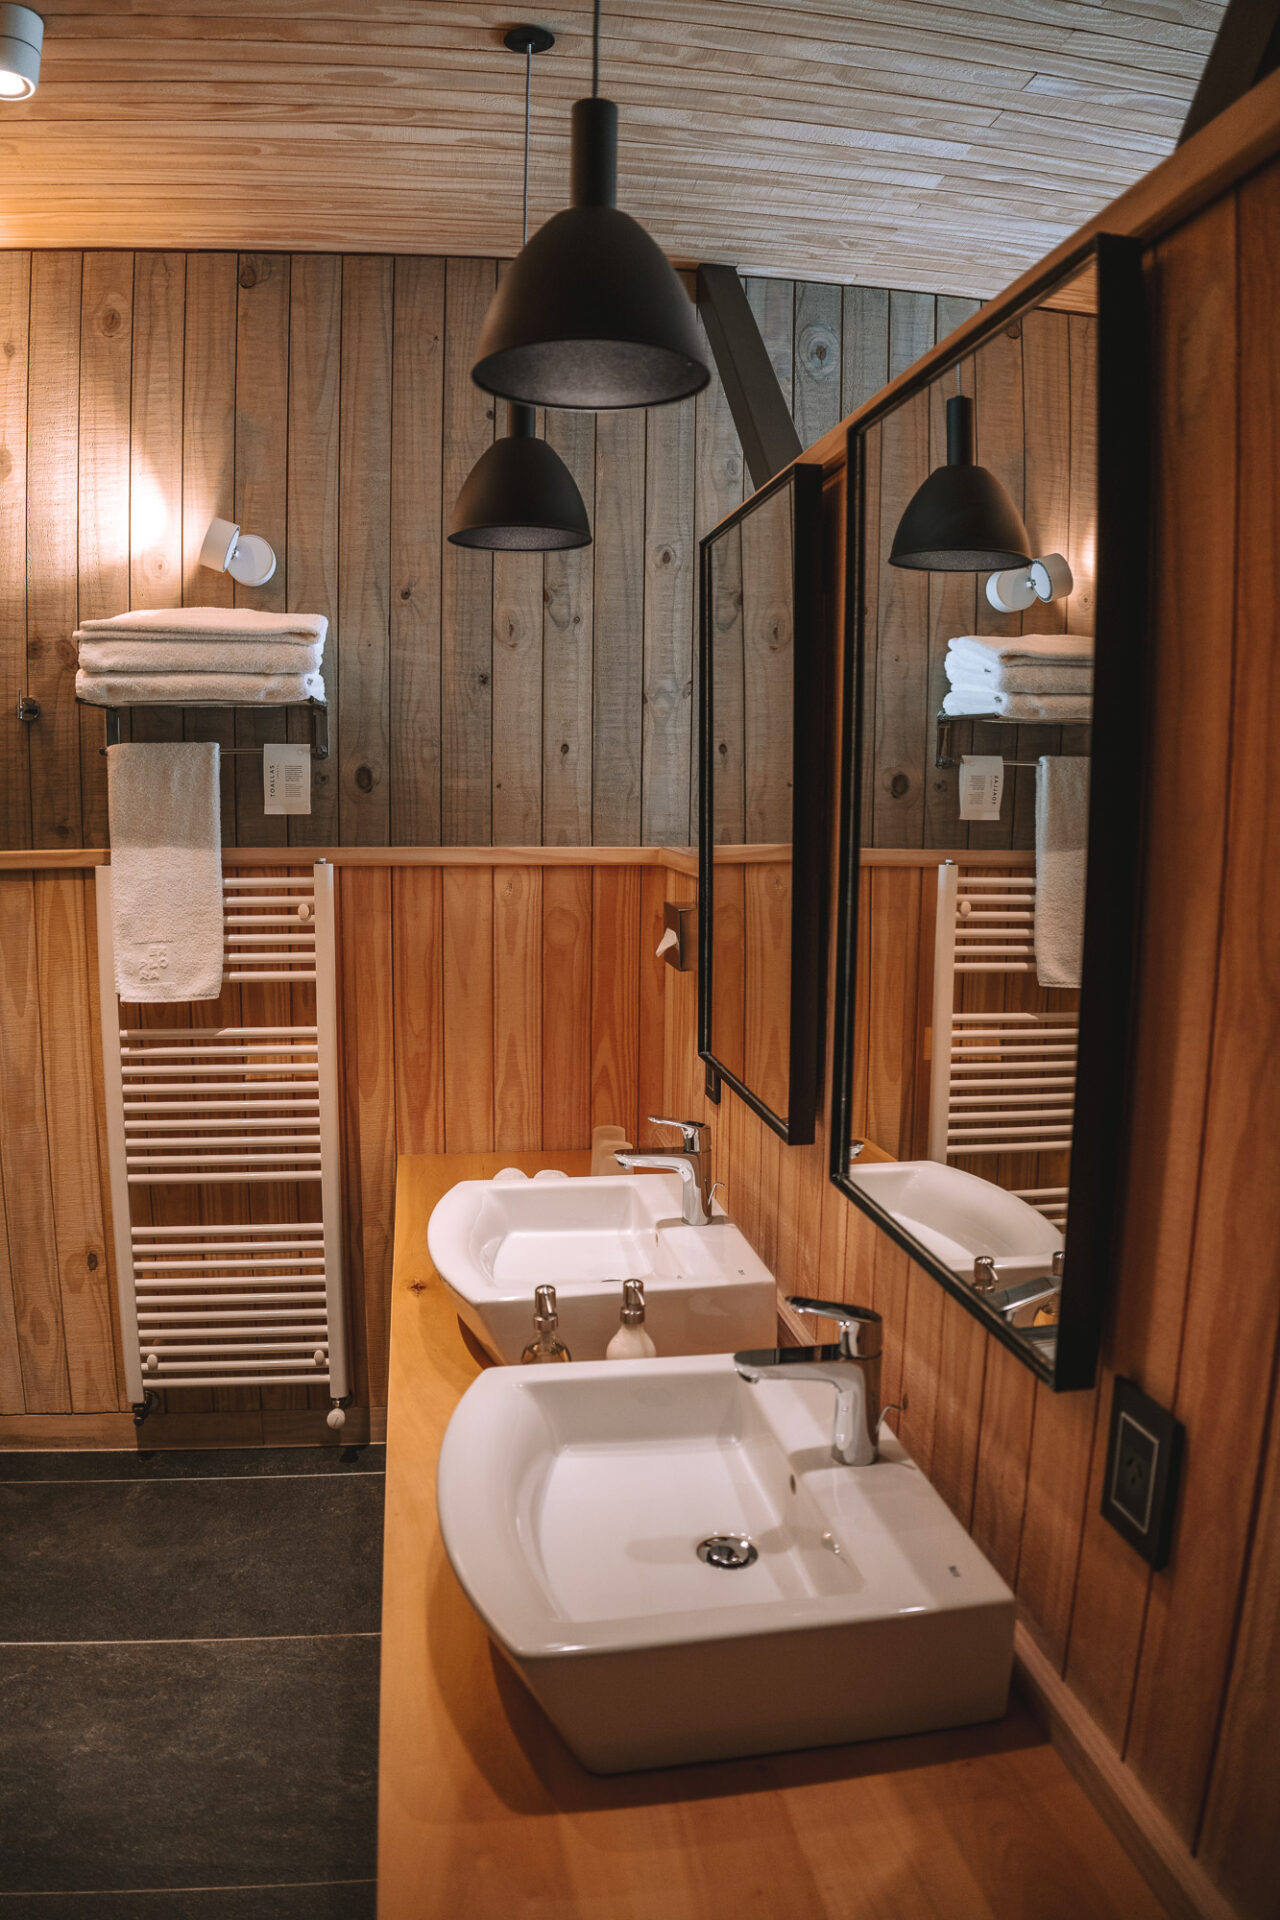 The bathroom area in Explora El Chalten hotel